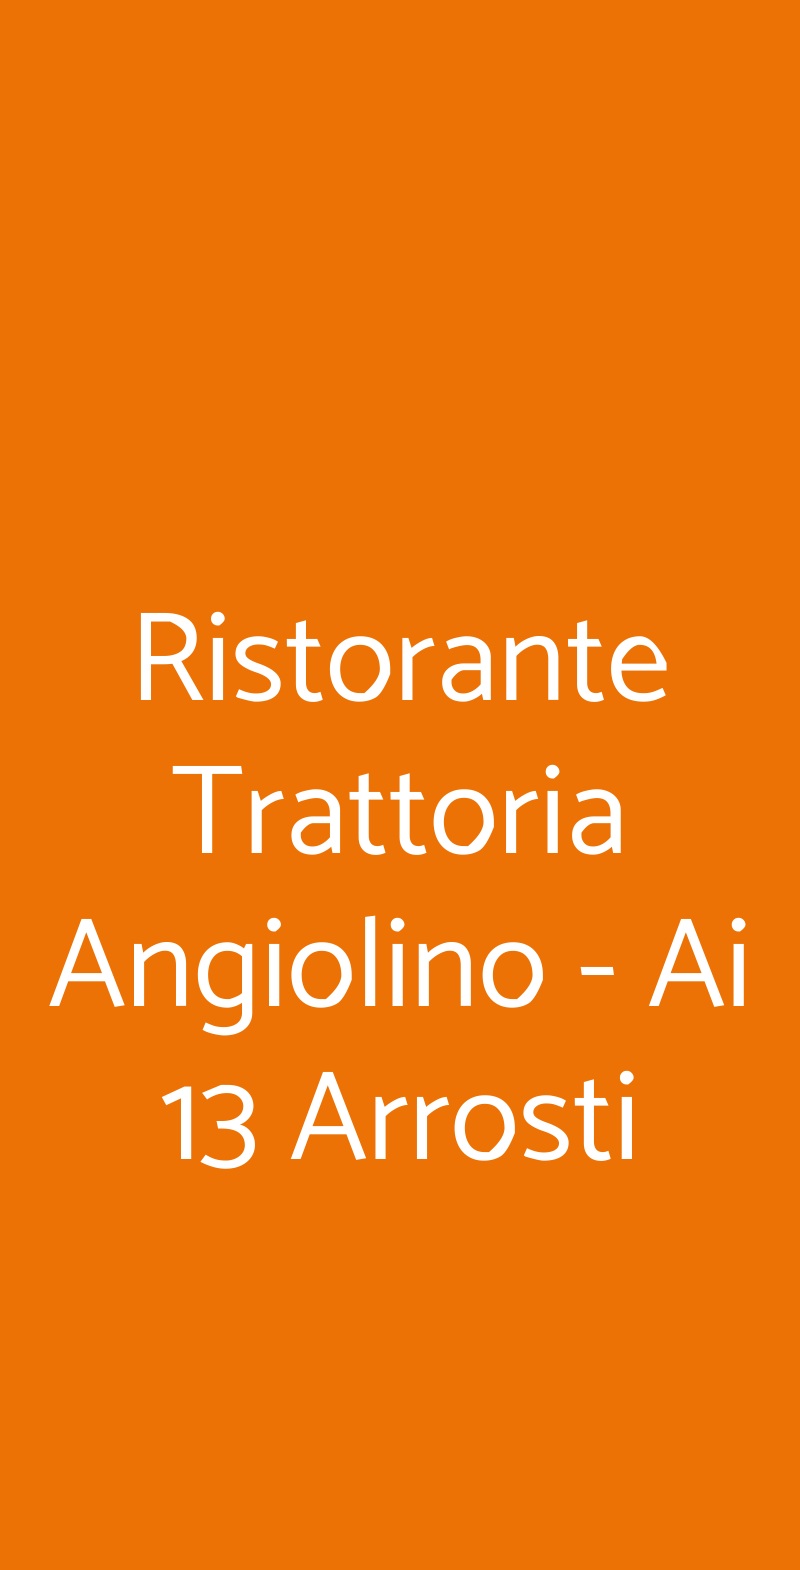 Ristorante Trattoria Angiolino - Ai 13 Arrosti Firenze menù 1 pagina